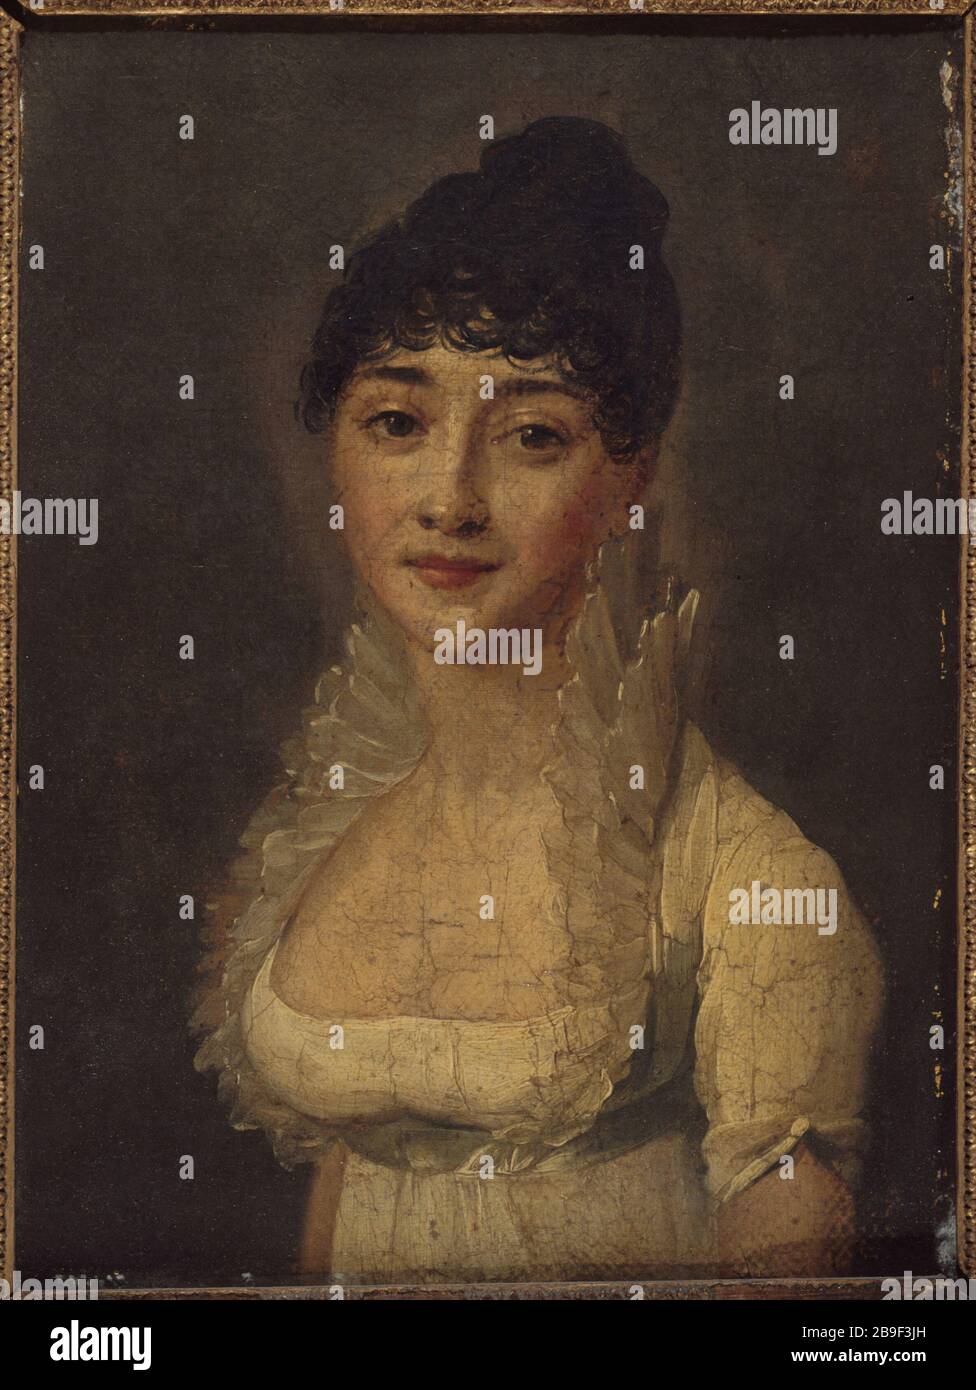 PORTRAIT OF A LADY Louis-Léopold Boilly (1761-1845). 'Portrait de femme'. Huile sur toile. Paris, musée Carnavalet. Stock Photo